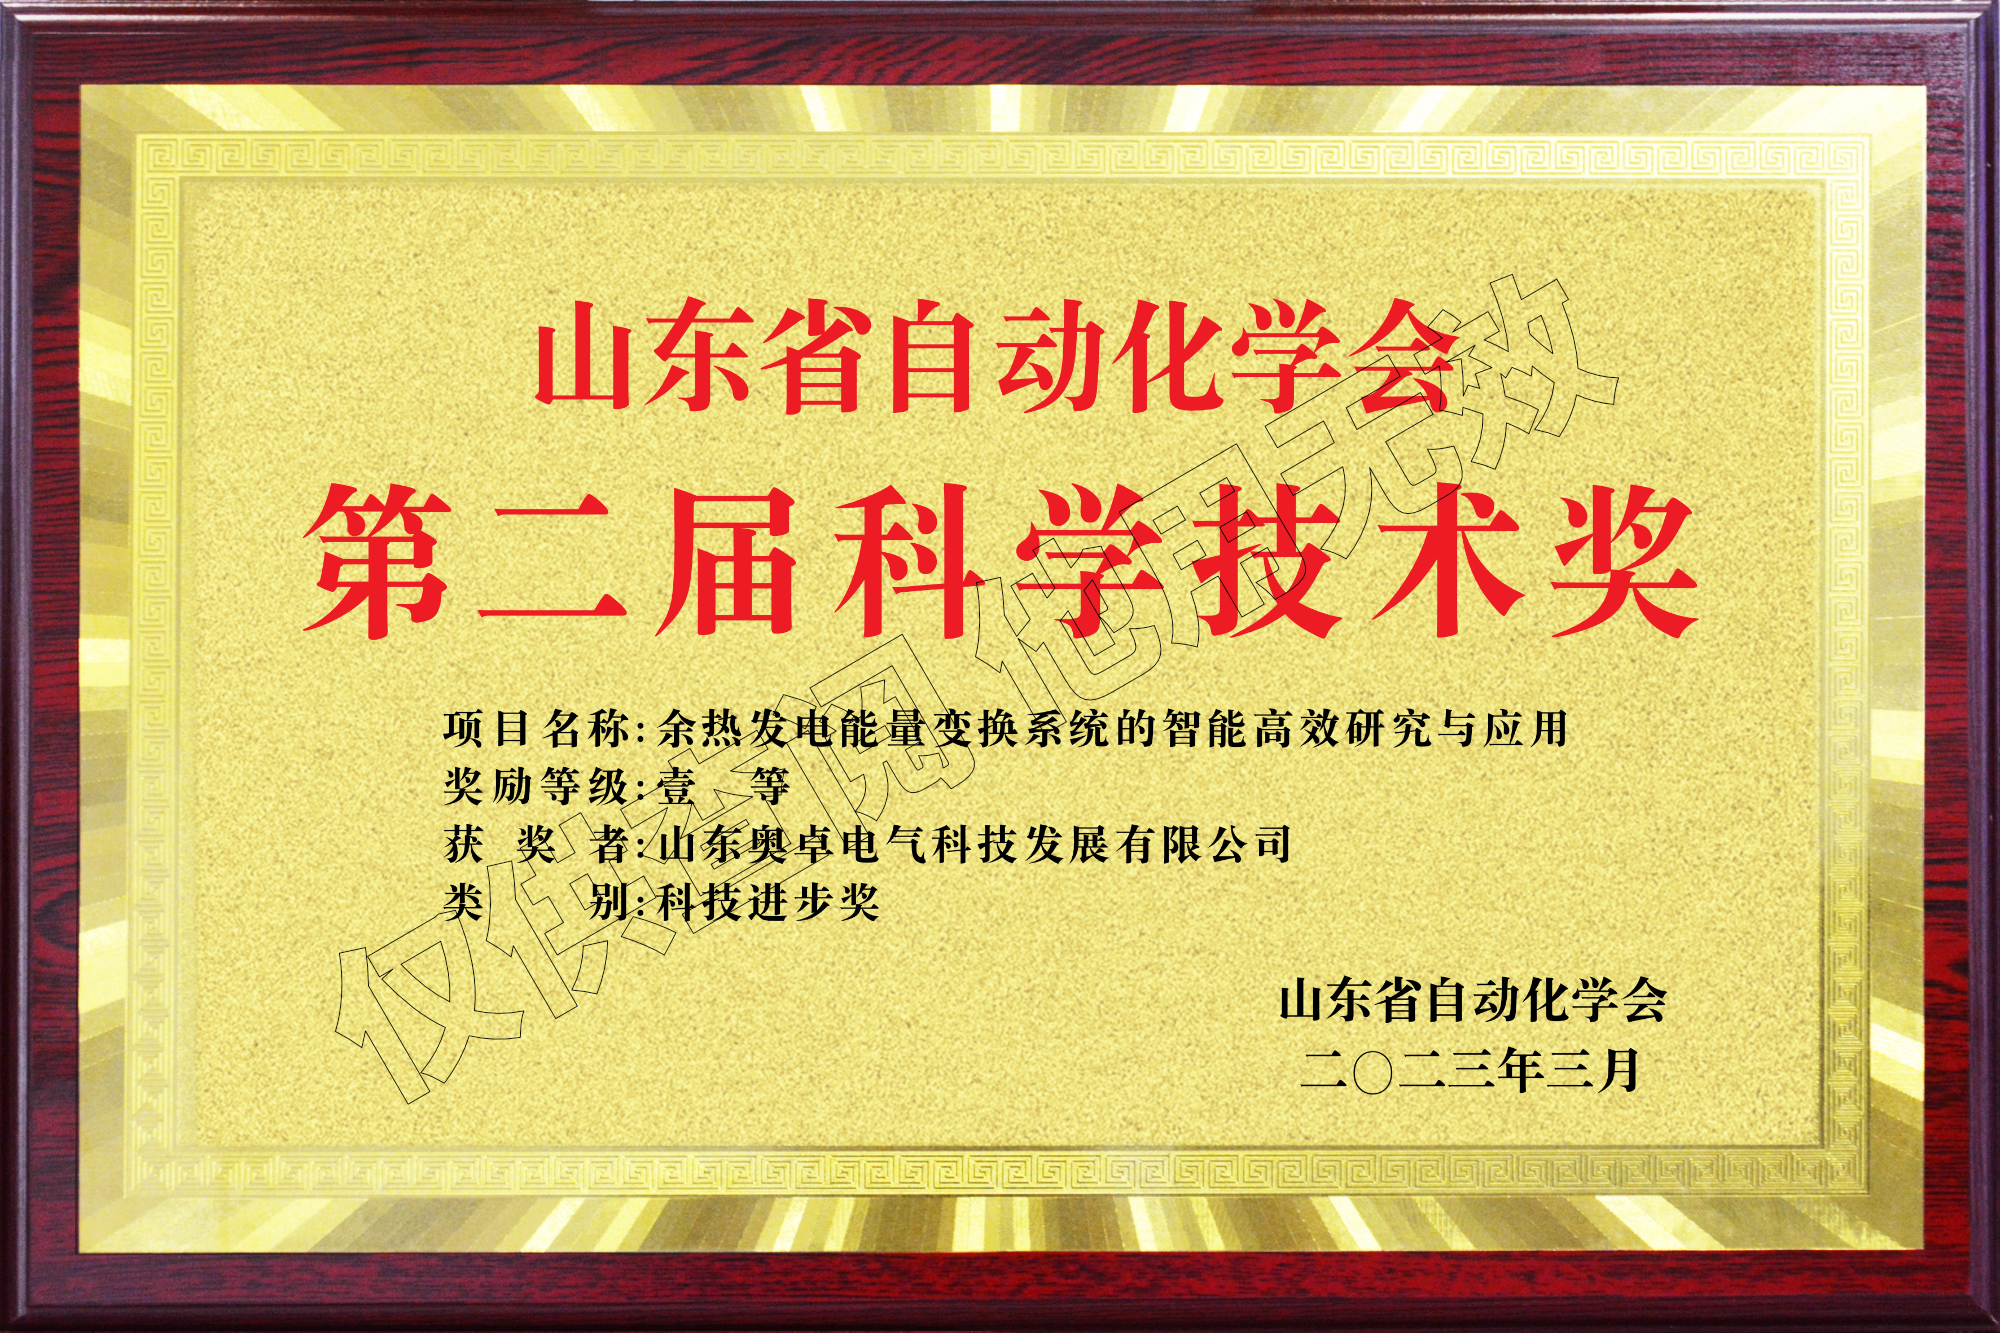 山东省自动化学会第二届科学技术奖科技进步奖一等奖